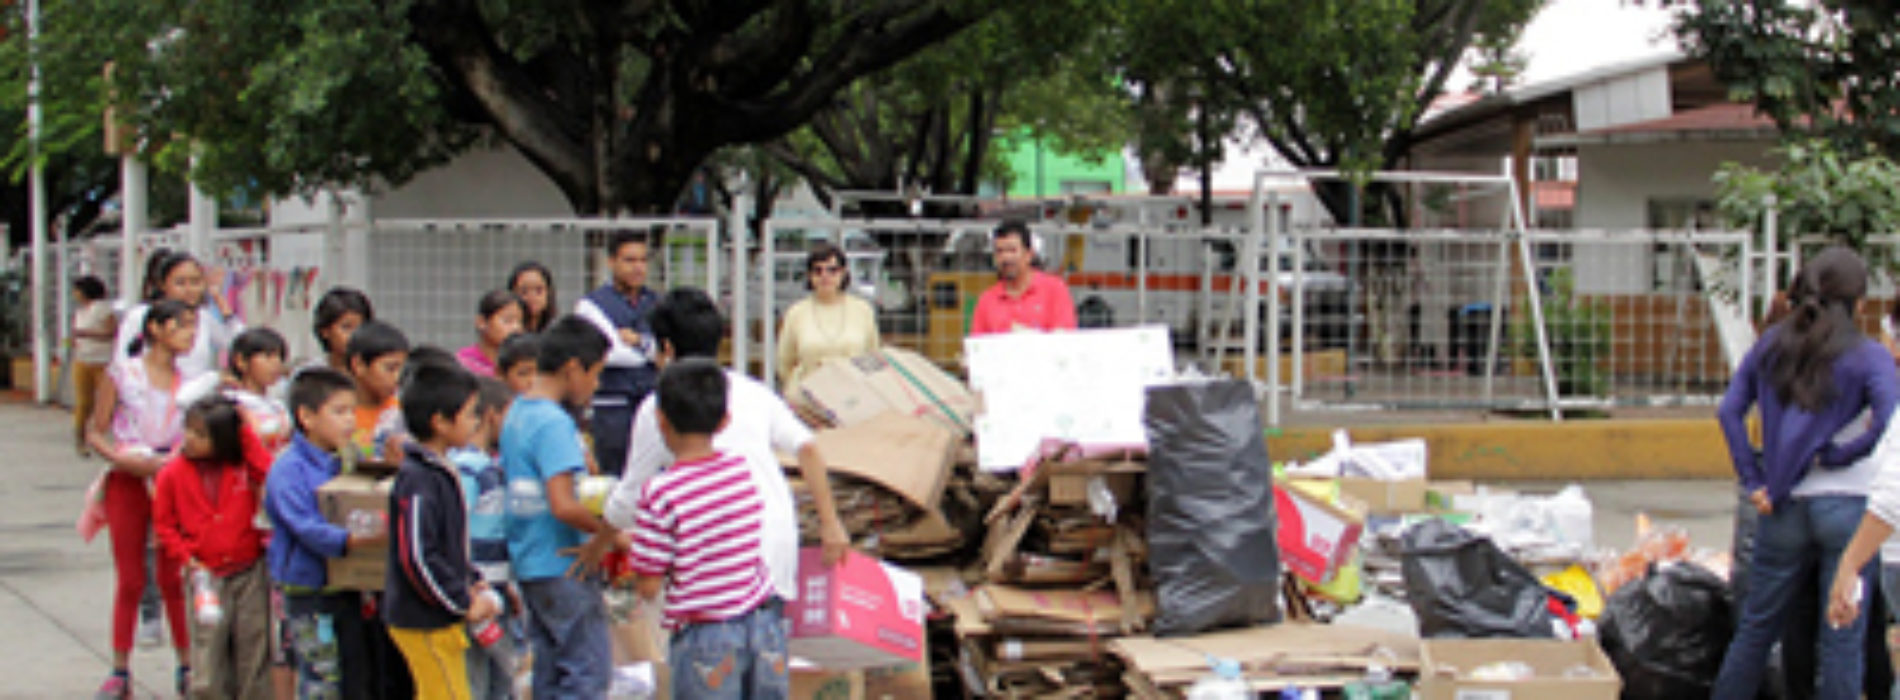 #Oaxaca #DiaMundialdelMedioAmbiente @DIF_Oaxaca Promueven reciclaje y cuidado al medio ambiente entre niños y jóvenes